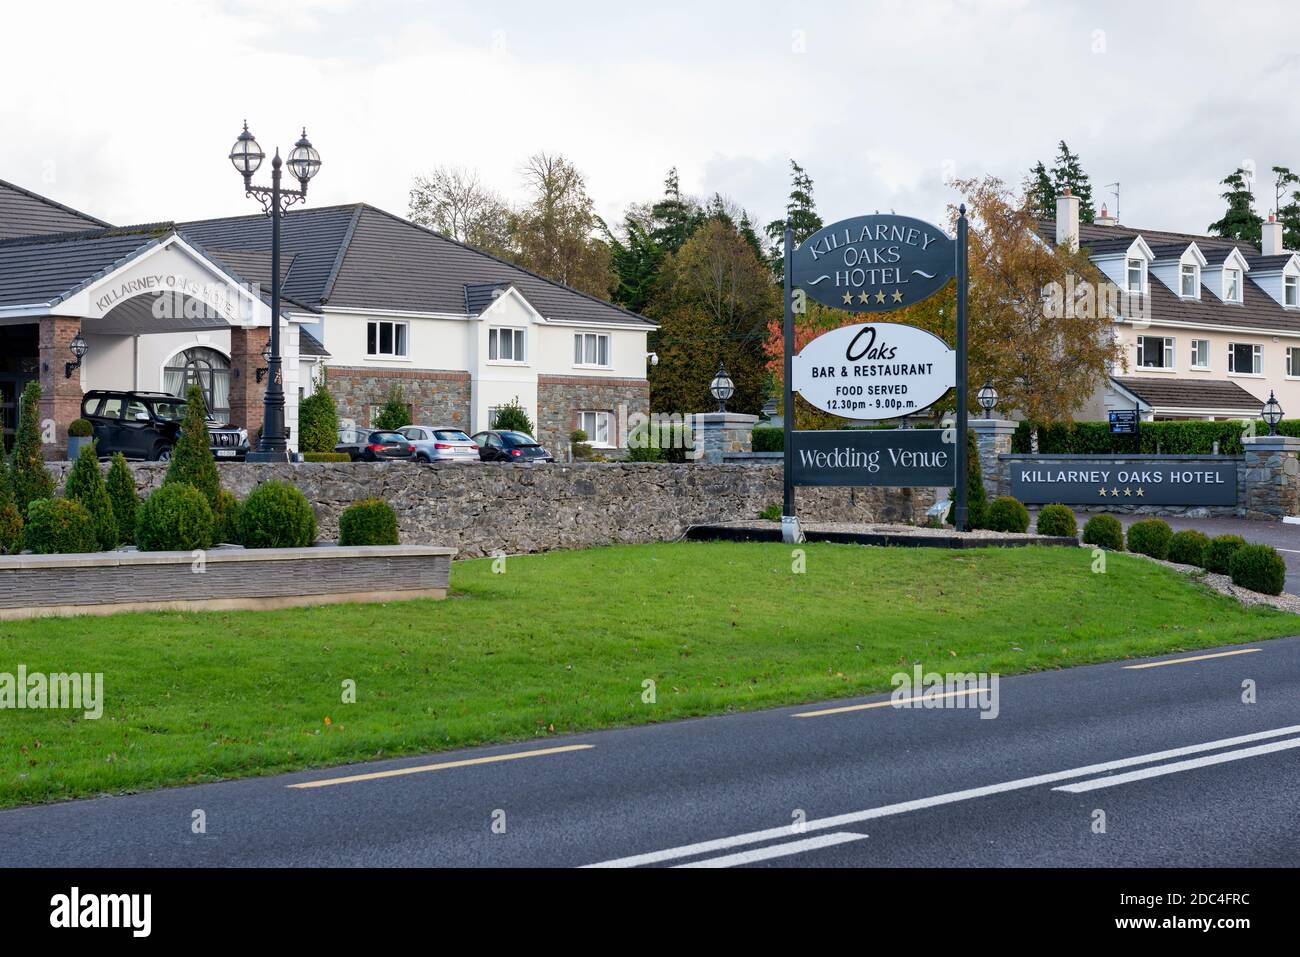 Il Killarney Oaks Hotel e il luogo per matrimoni a Killarney, nella contea di Kerry, Irlanda Foto Stock